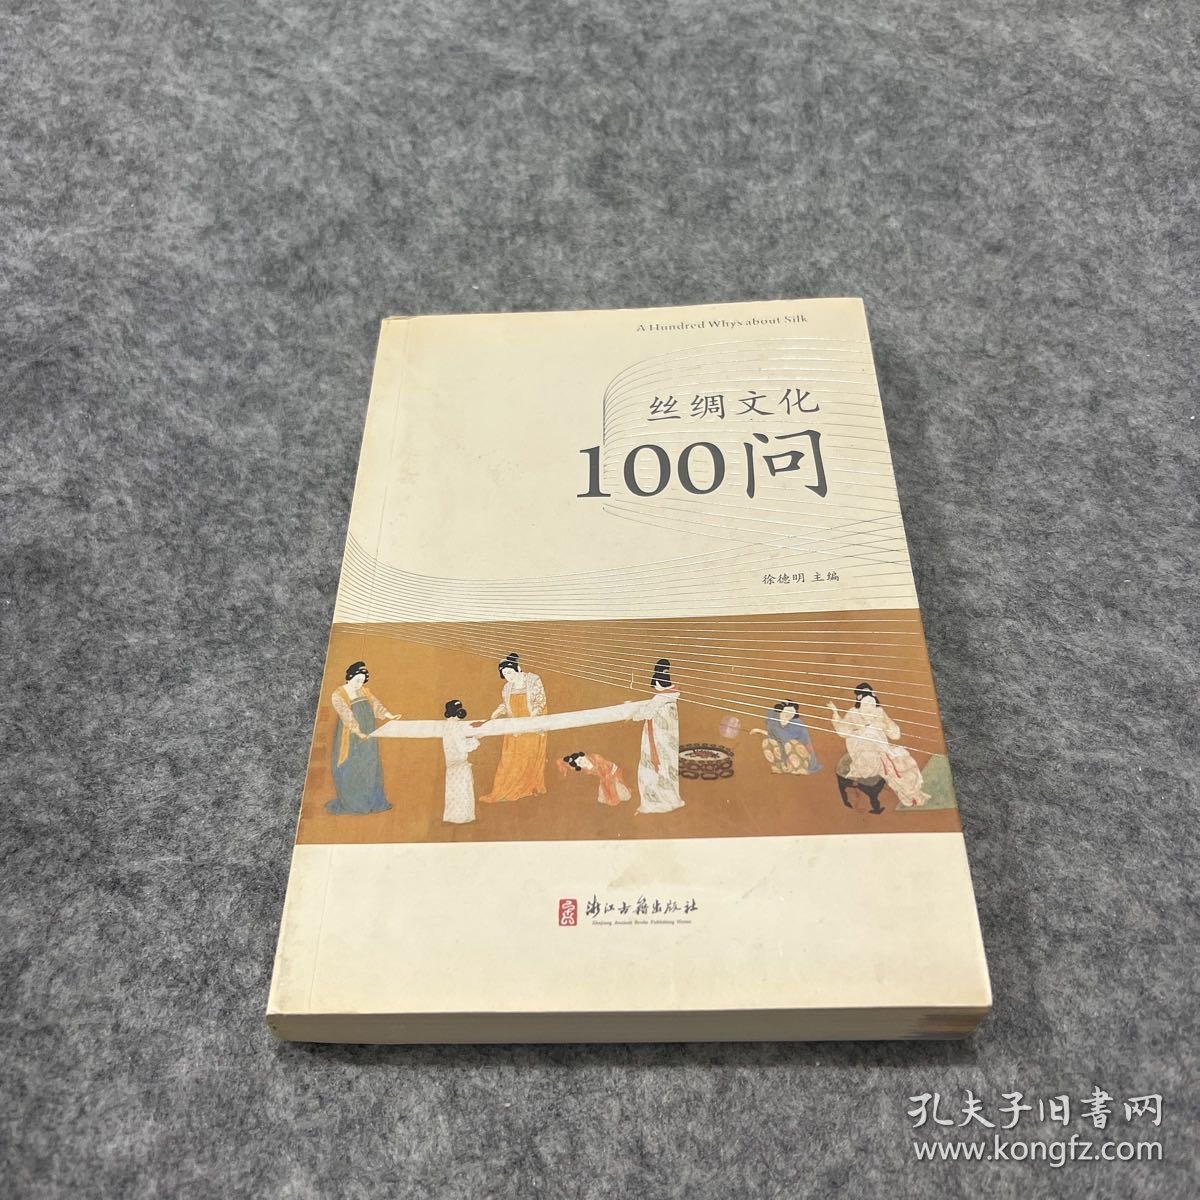 丝绸文化100问